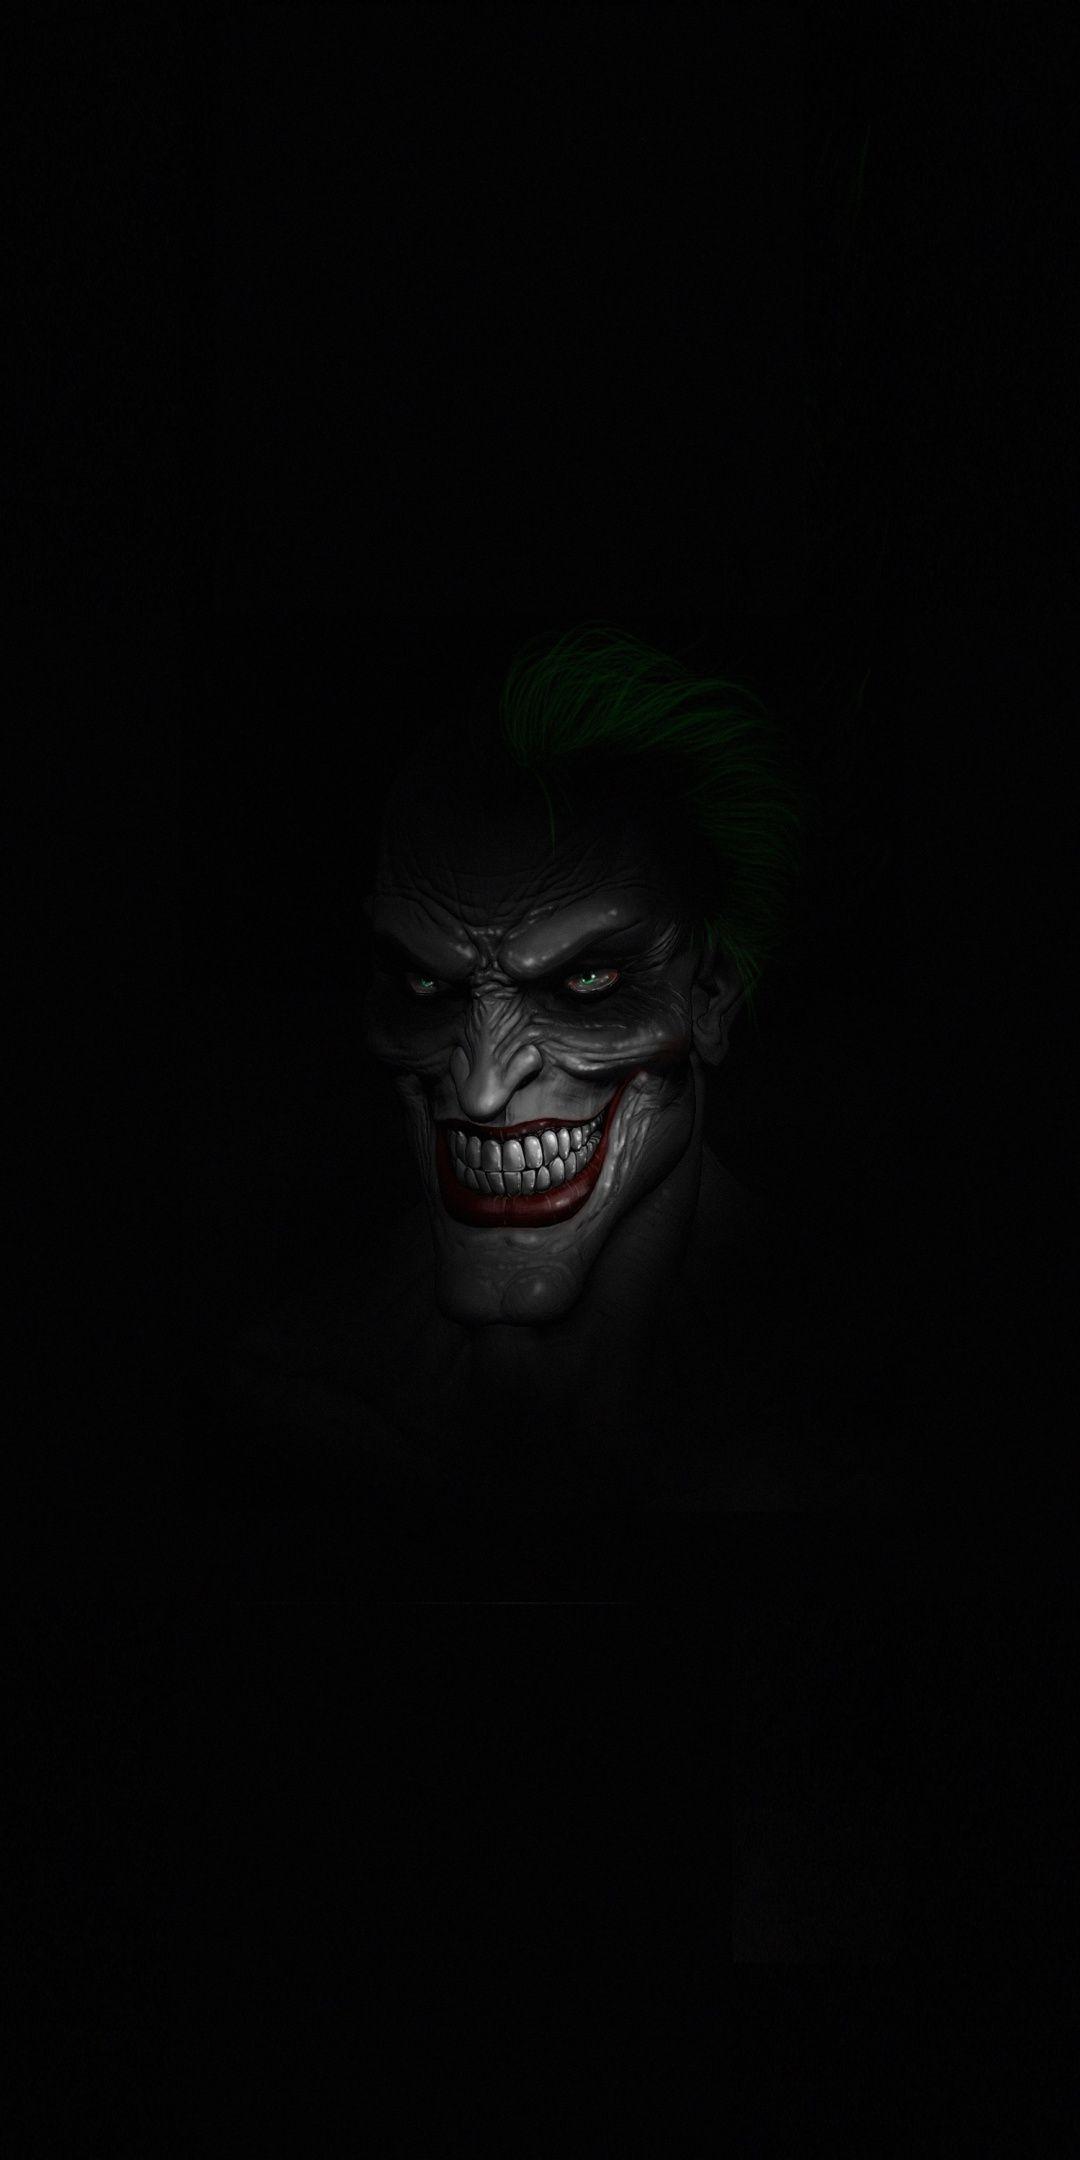 Joker's face, dark, minimal, 1080x2160 wallpaper. Joker face